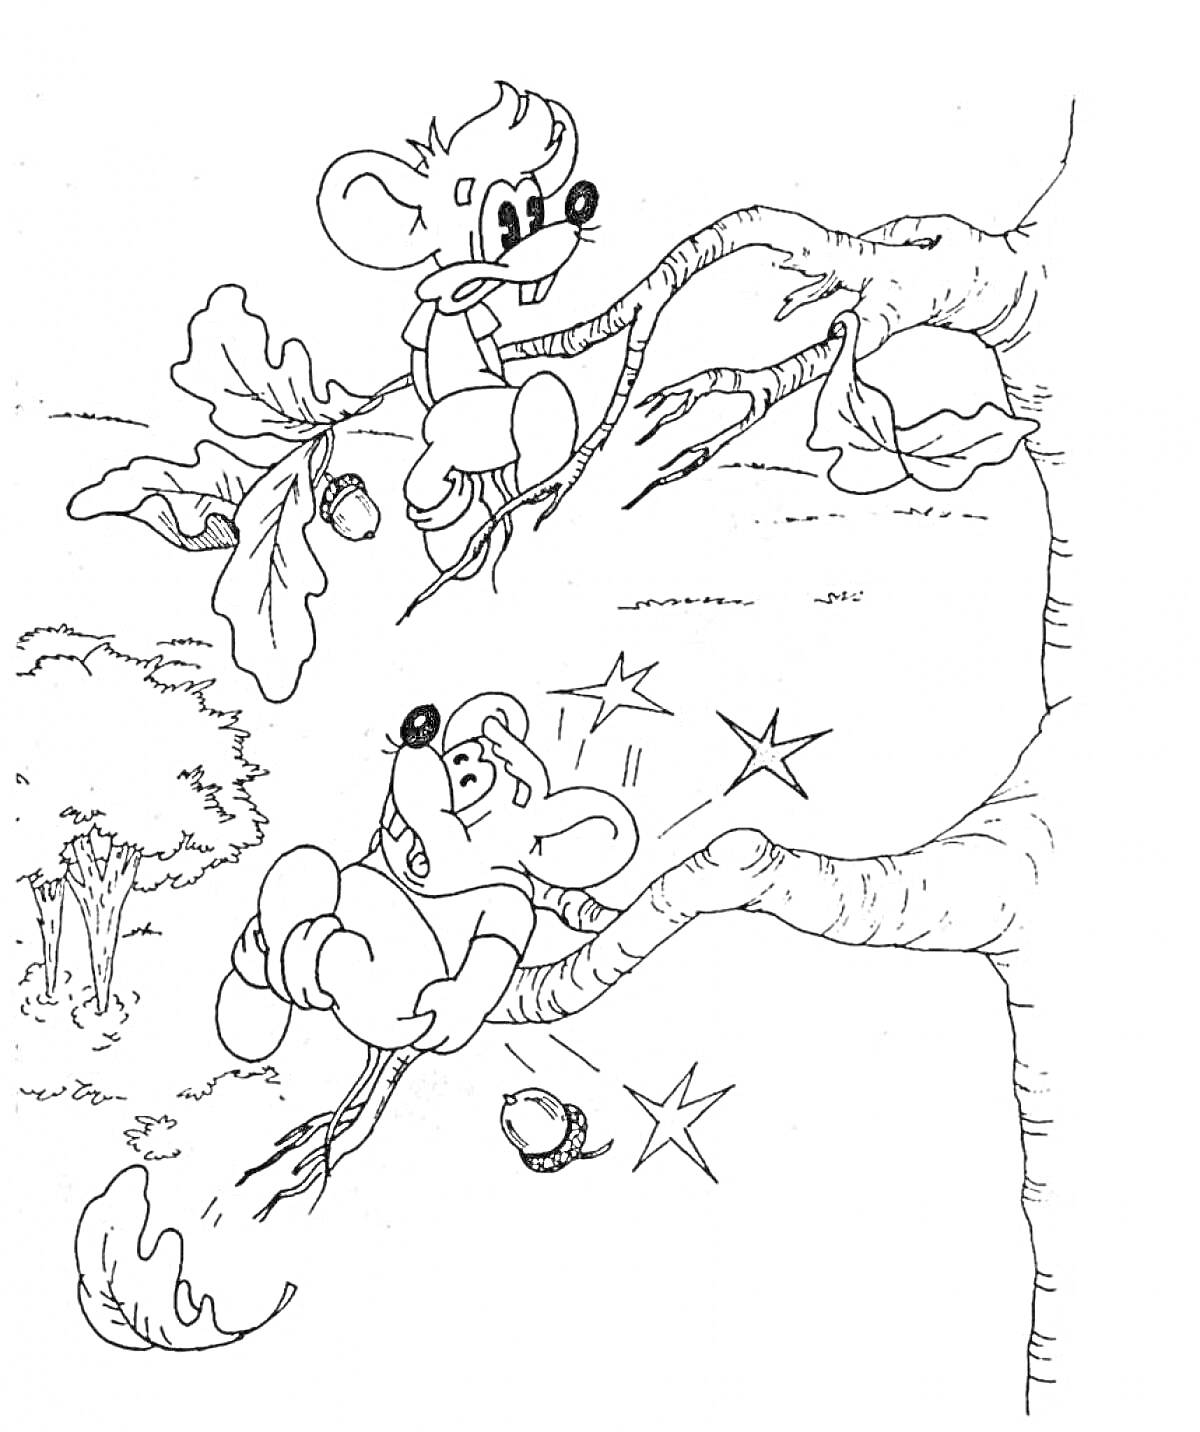 Раскраска Мыши на дереве, один мышонок падает, из элементов - дерево, листья, жёлуди, звёзды от падения, другой мышонок на ветке выше.